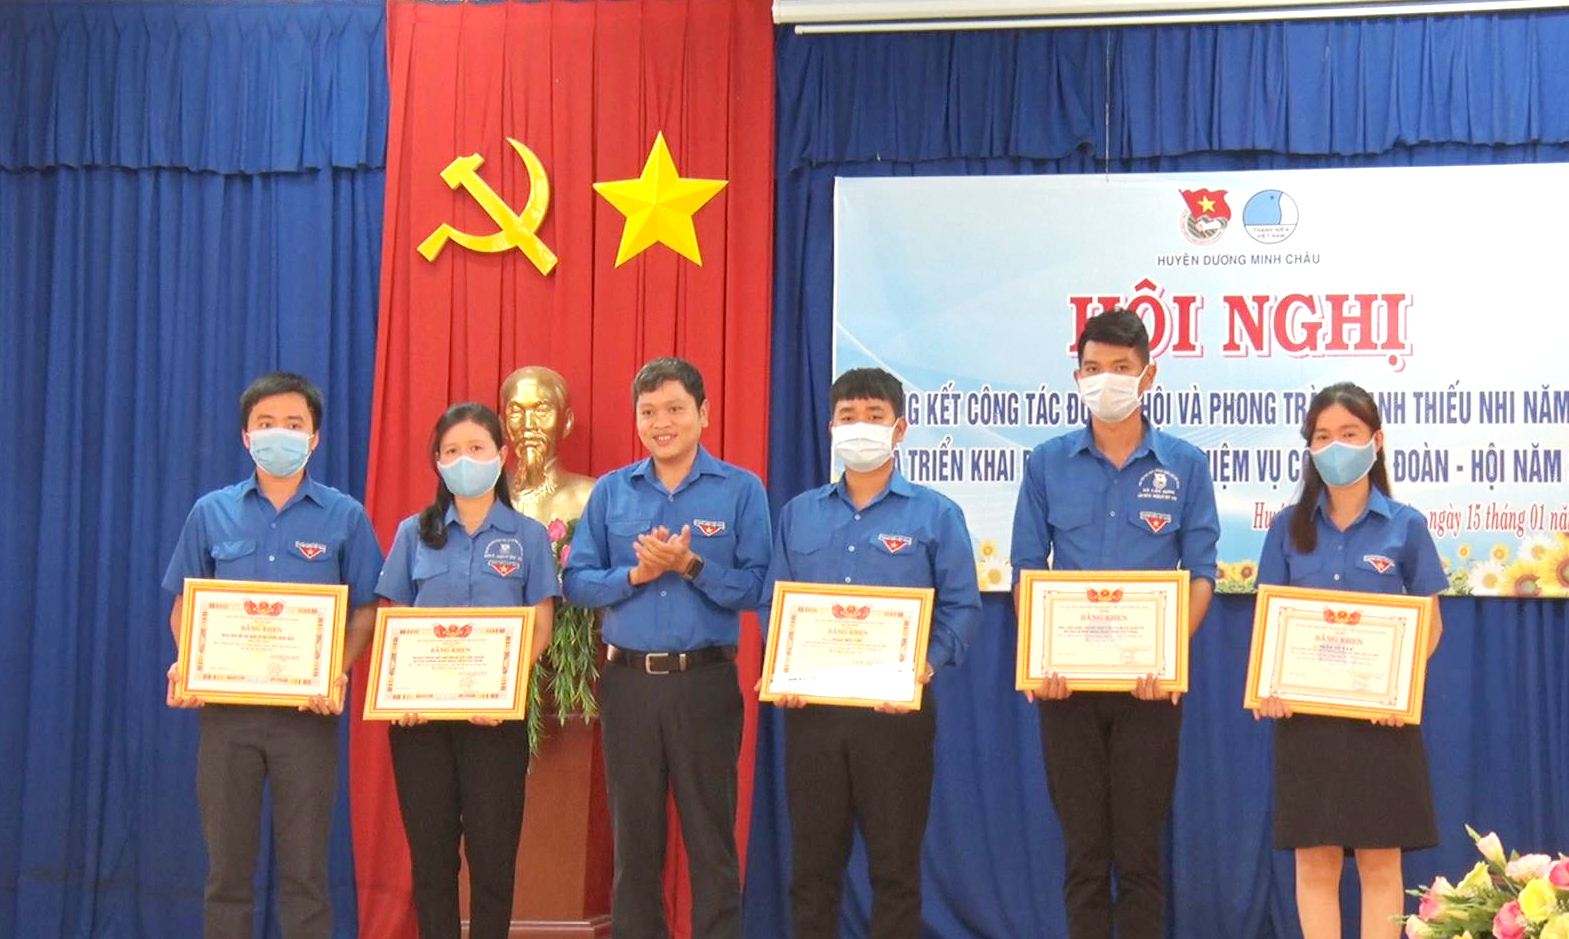 Huyện Dương Minh Châu tổng kết công tác Đoàn- Hội và phong trào thanh thiếu nhi  năm 2020